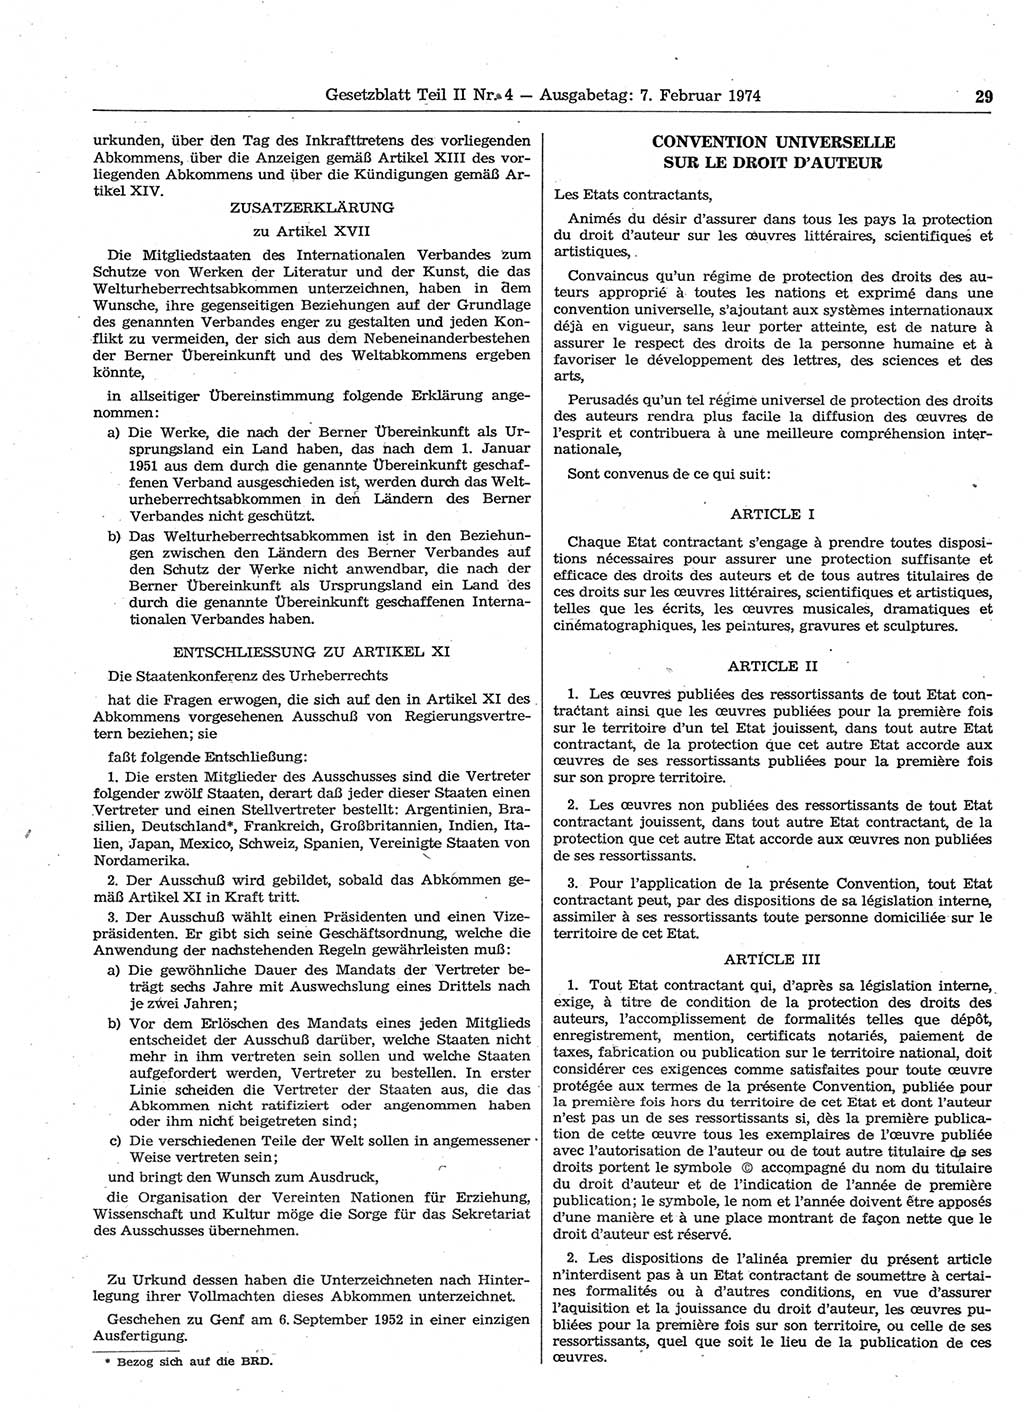 Gesetzblatt (GBl.) der Deutschen Demokratischen Republik (DDR) Teil ⅠⅠ 1974, Seite 29 (GBl. DDR ⅠⅠ 1974, S. 29)